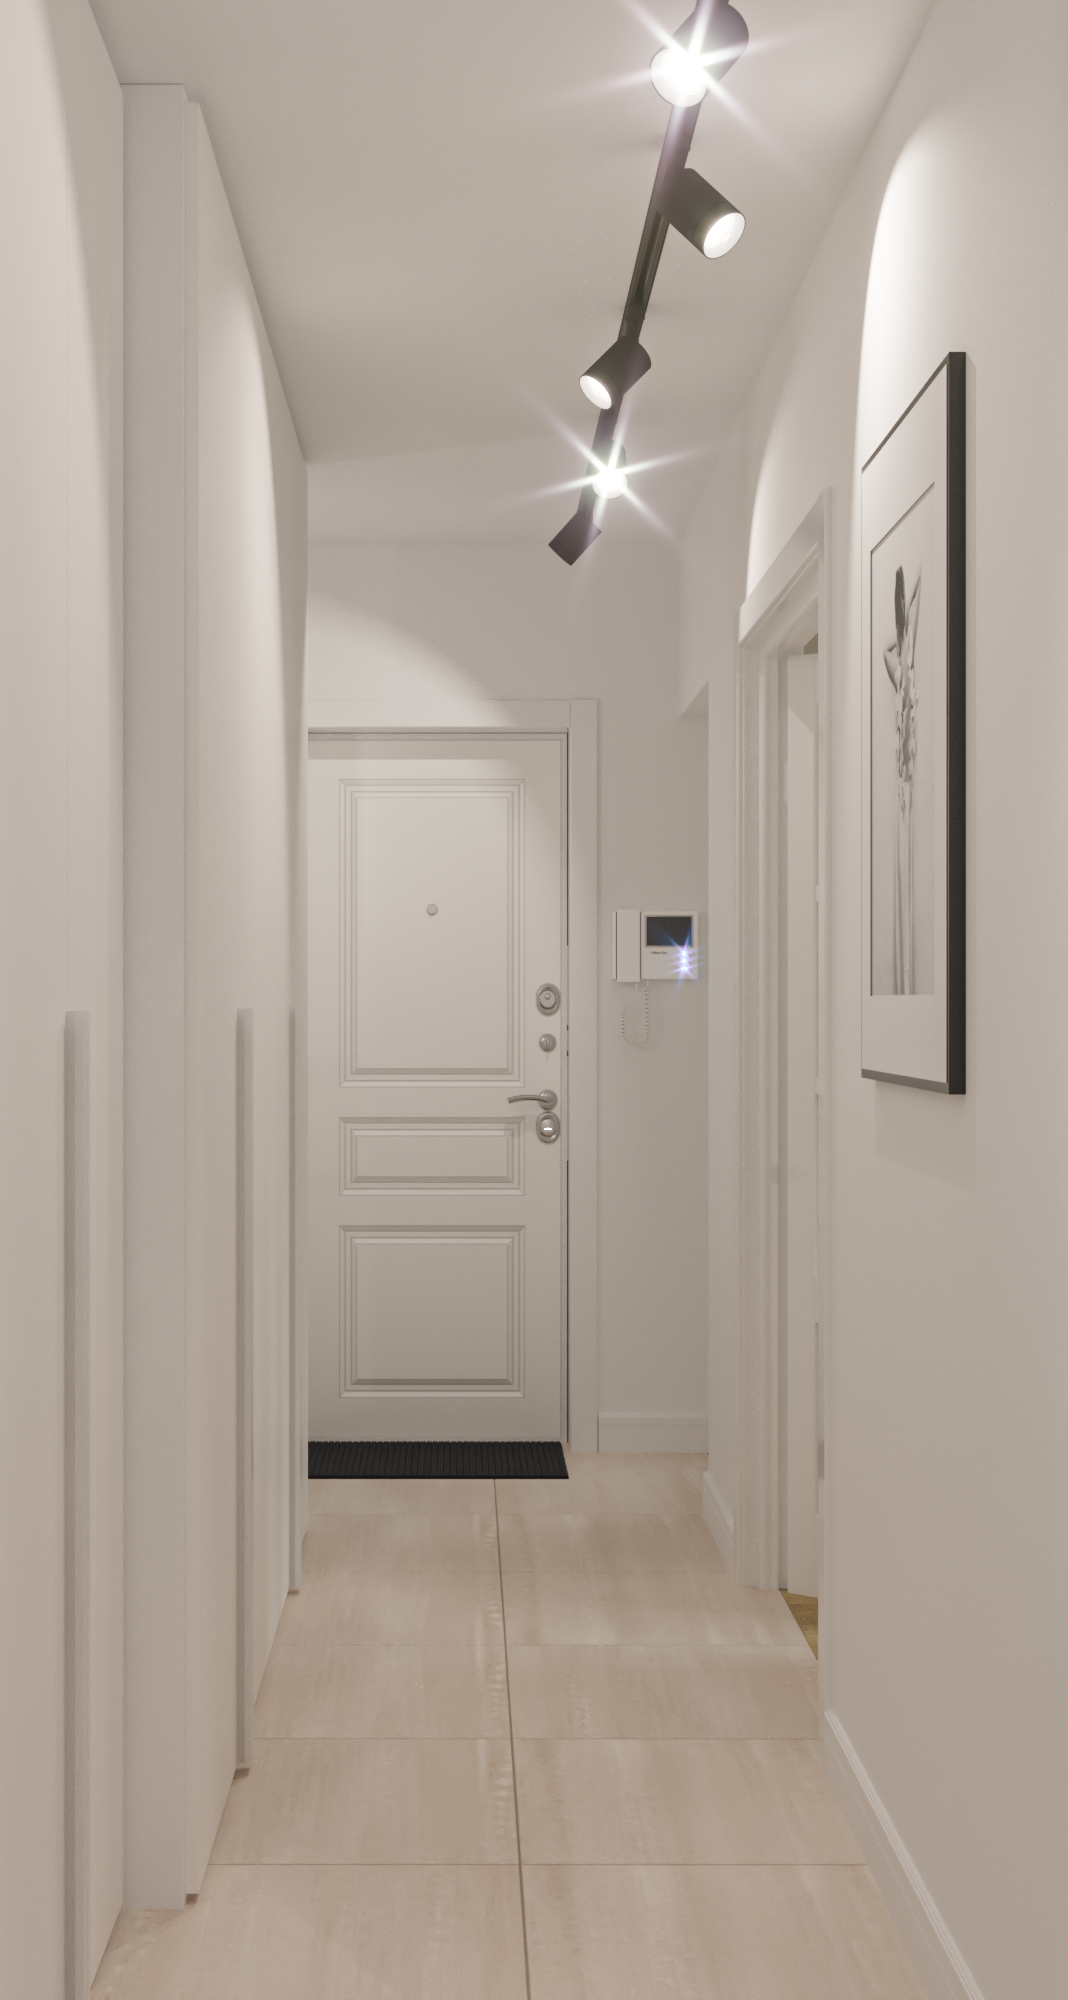 Интерьер коридора cветовыми линиями, подсветкой настенной, подсветкой светодиодной и с подсветкой